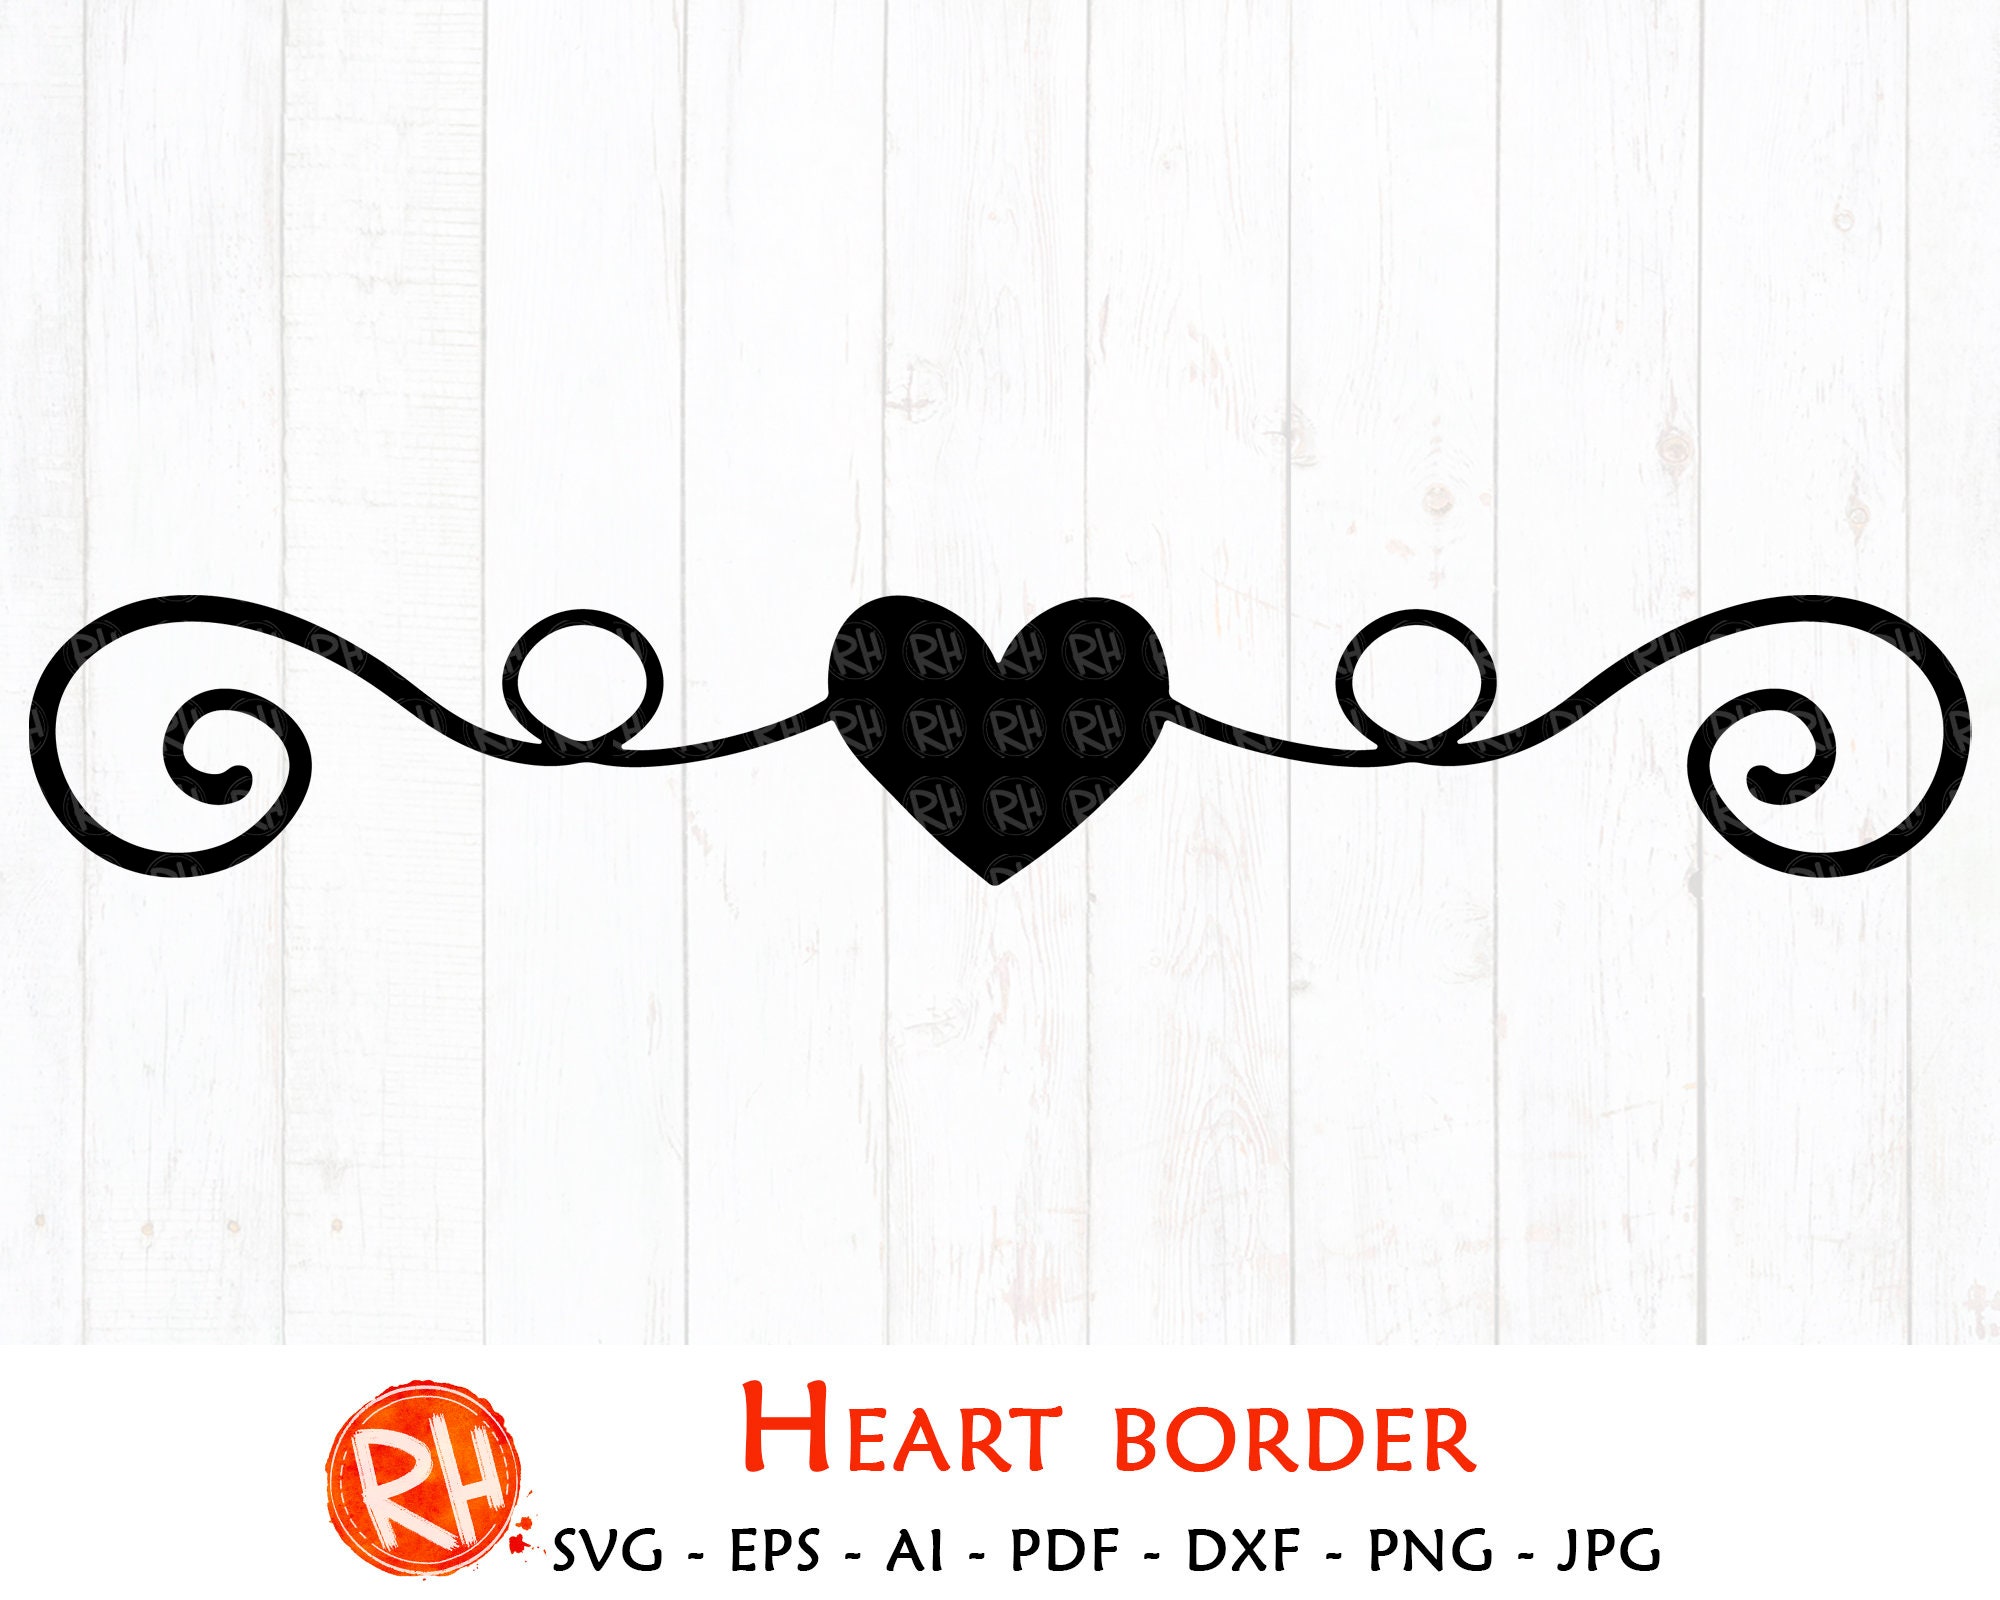 Circle Heart Border SVG